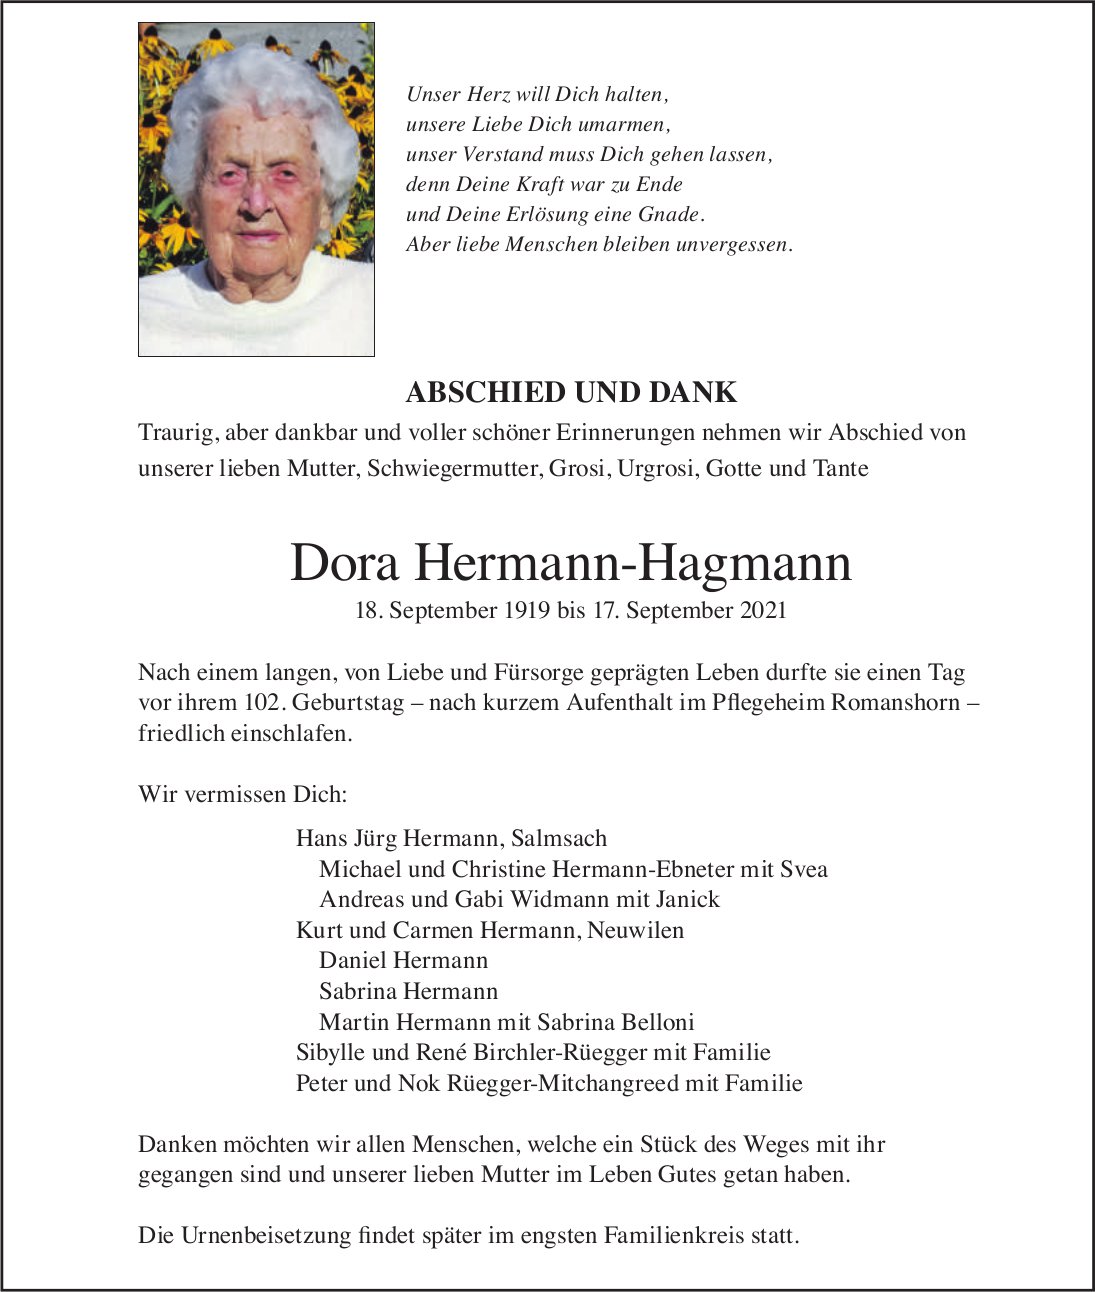 Hermann-Hagmann Dora, September 2021 / TA